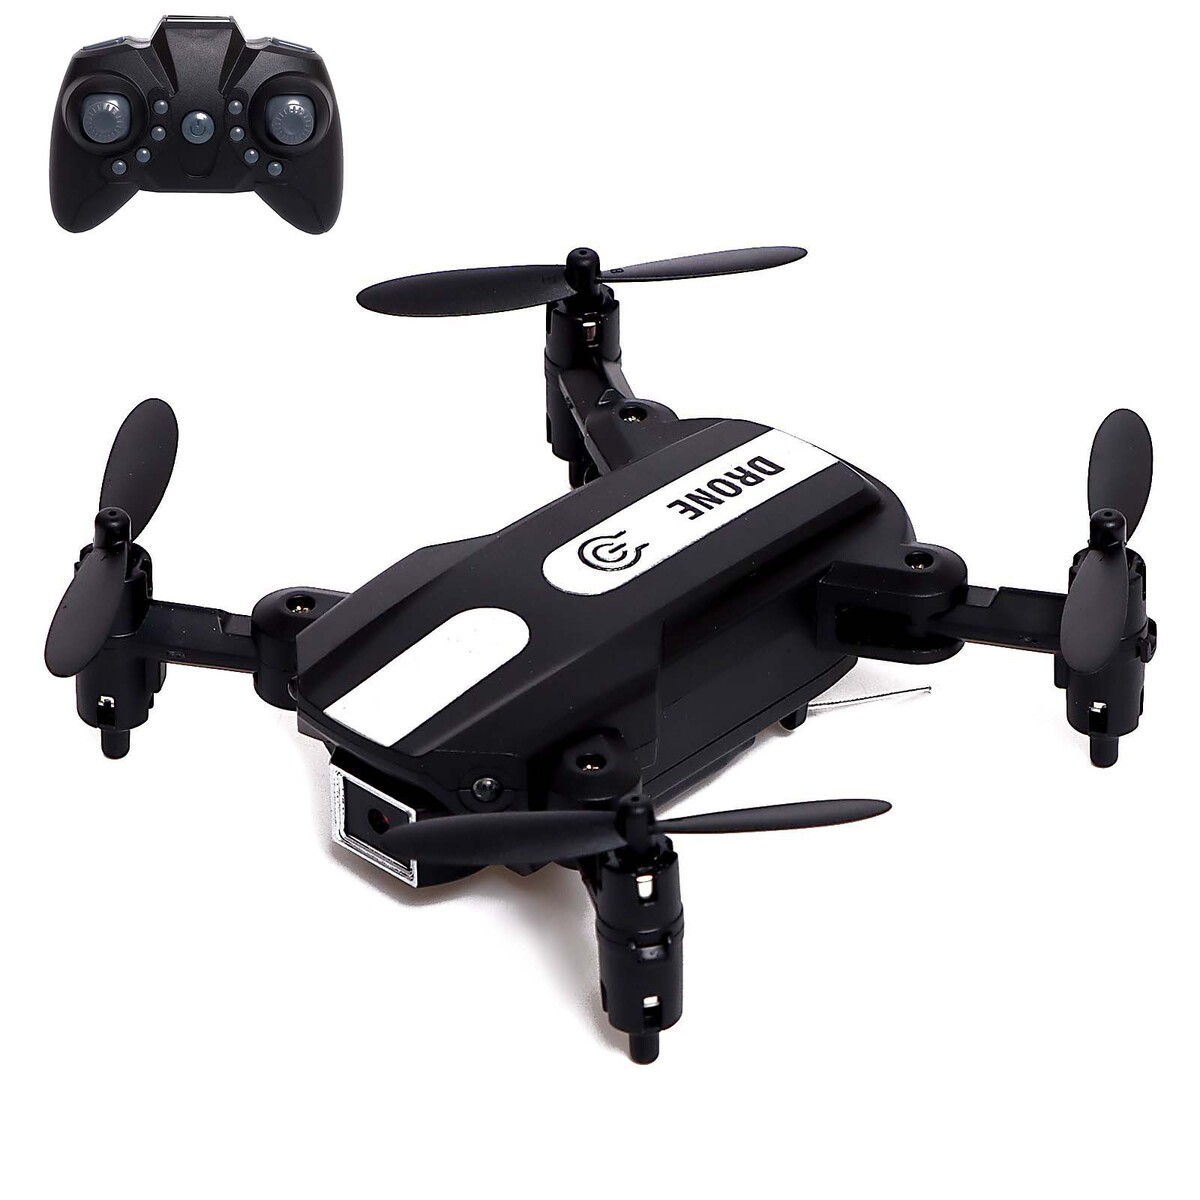  flash drone,  480p, wi-fi,  ,  